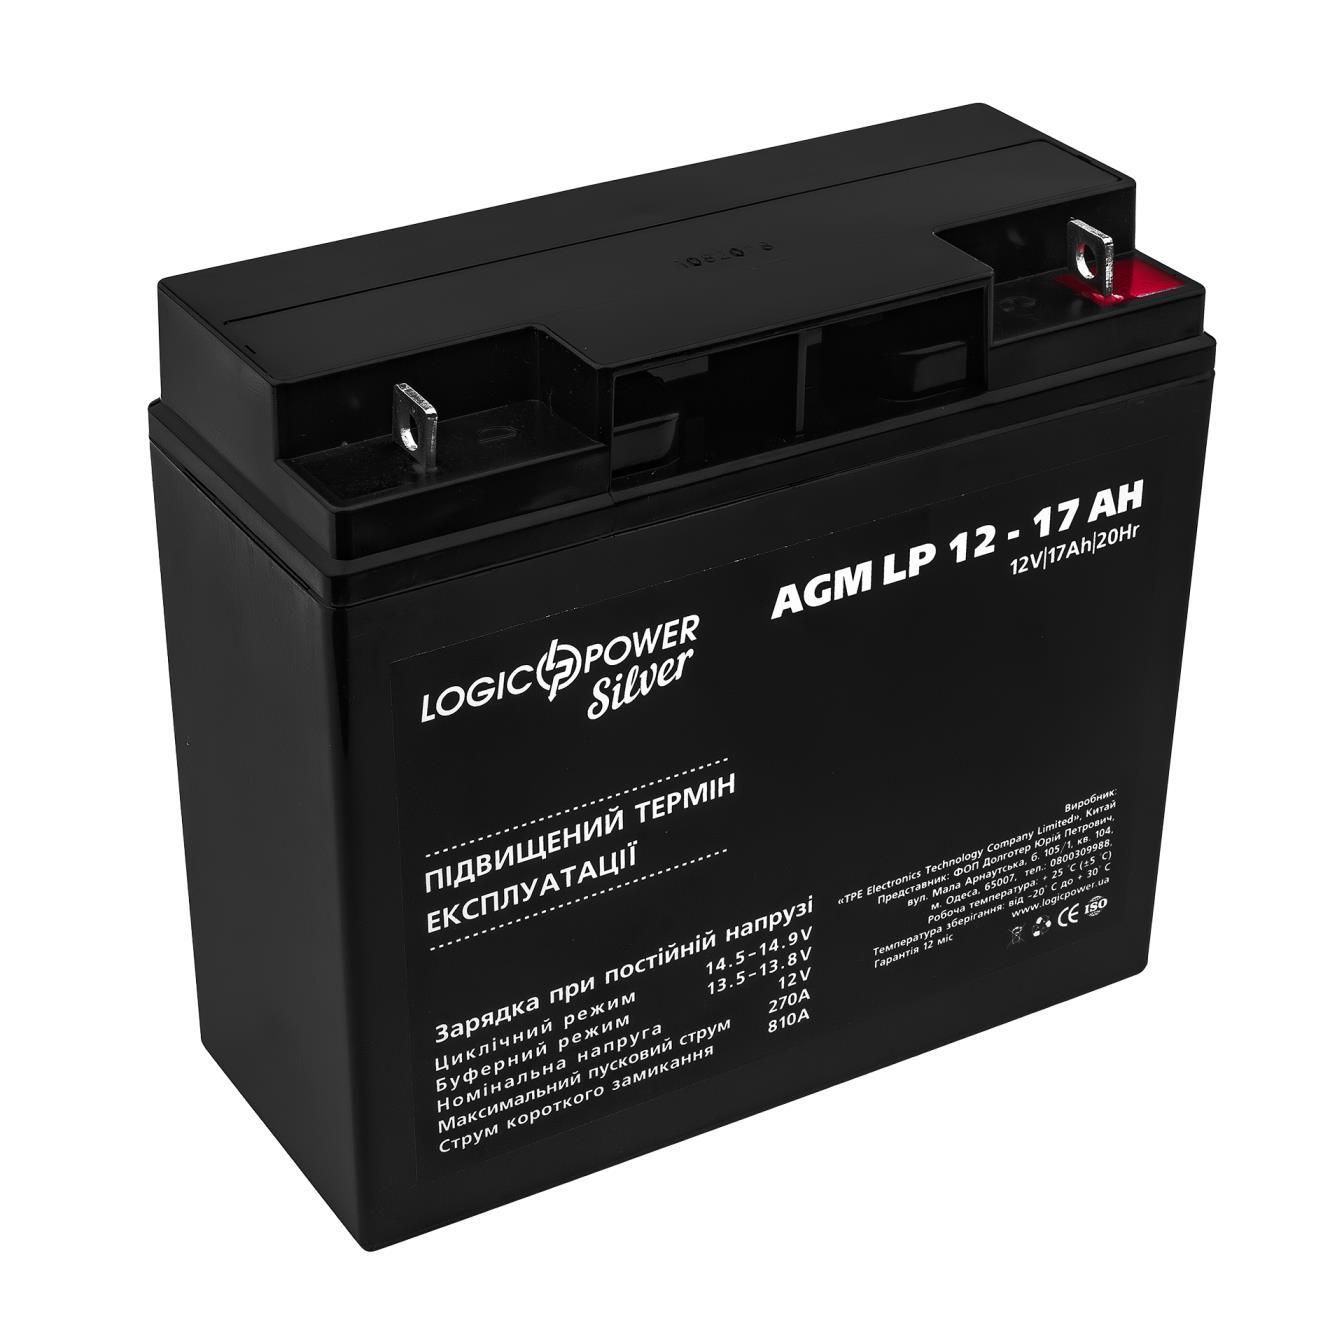 Акумулятор свинцево-кислотний LogicPower AGM LP 12V - 17 Ah Silver (3329) в інтернет-магазині, головне фото